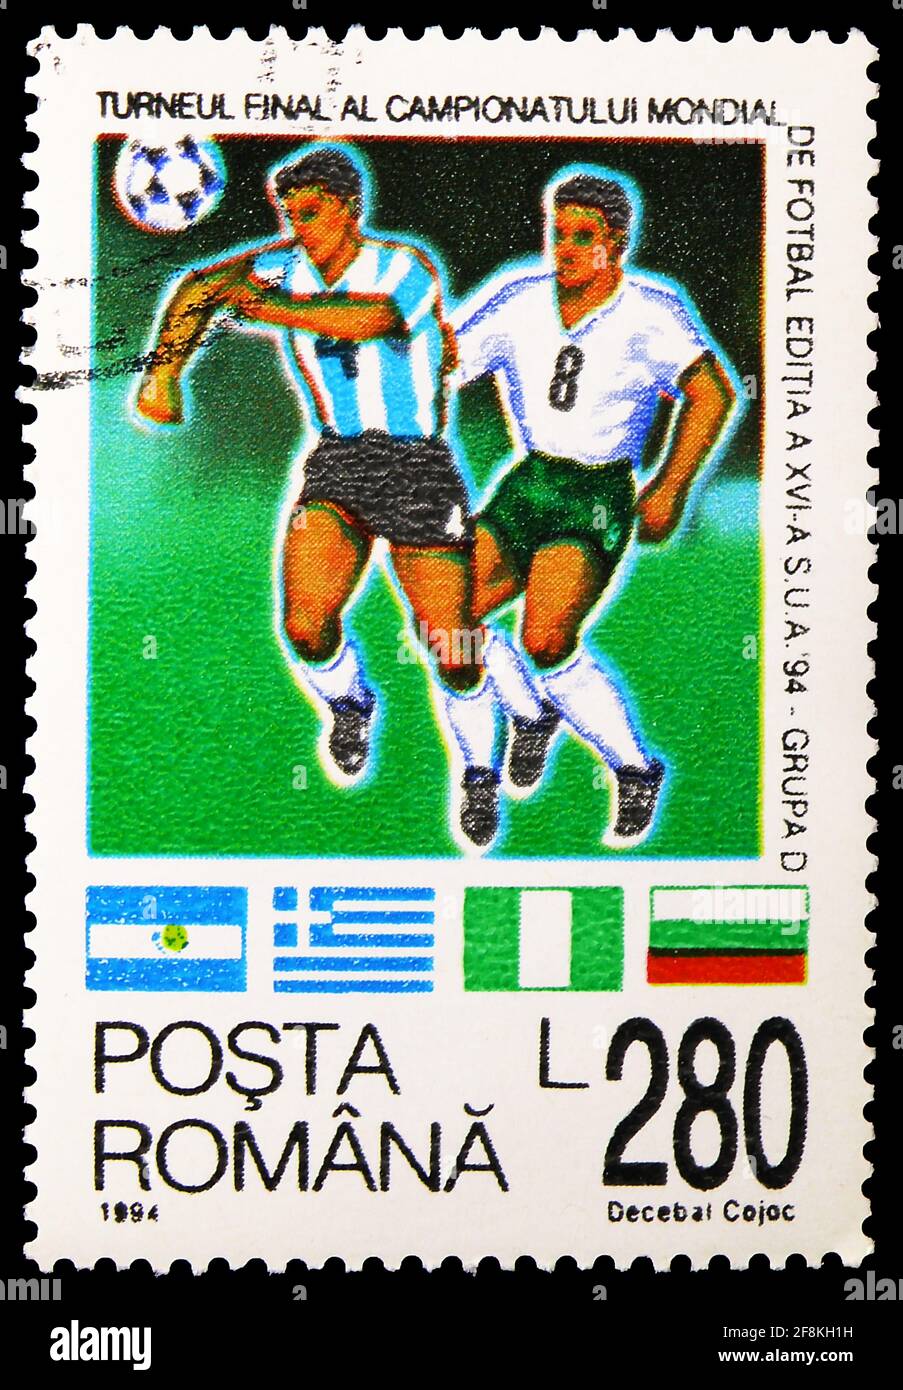 MOSCOU, RUSSIE - 10 NOVEMBRE 2019 : timbre-poste imprimé en Roumanie montre le Groupe D, coupe du monde de la FIFA 1994 - série USA, vers 1994 Banque D'Images